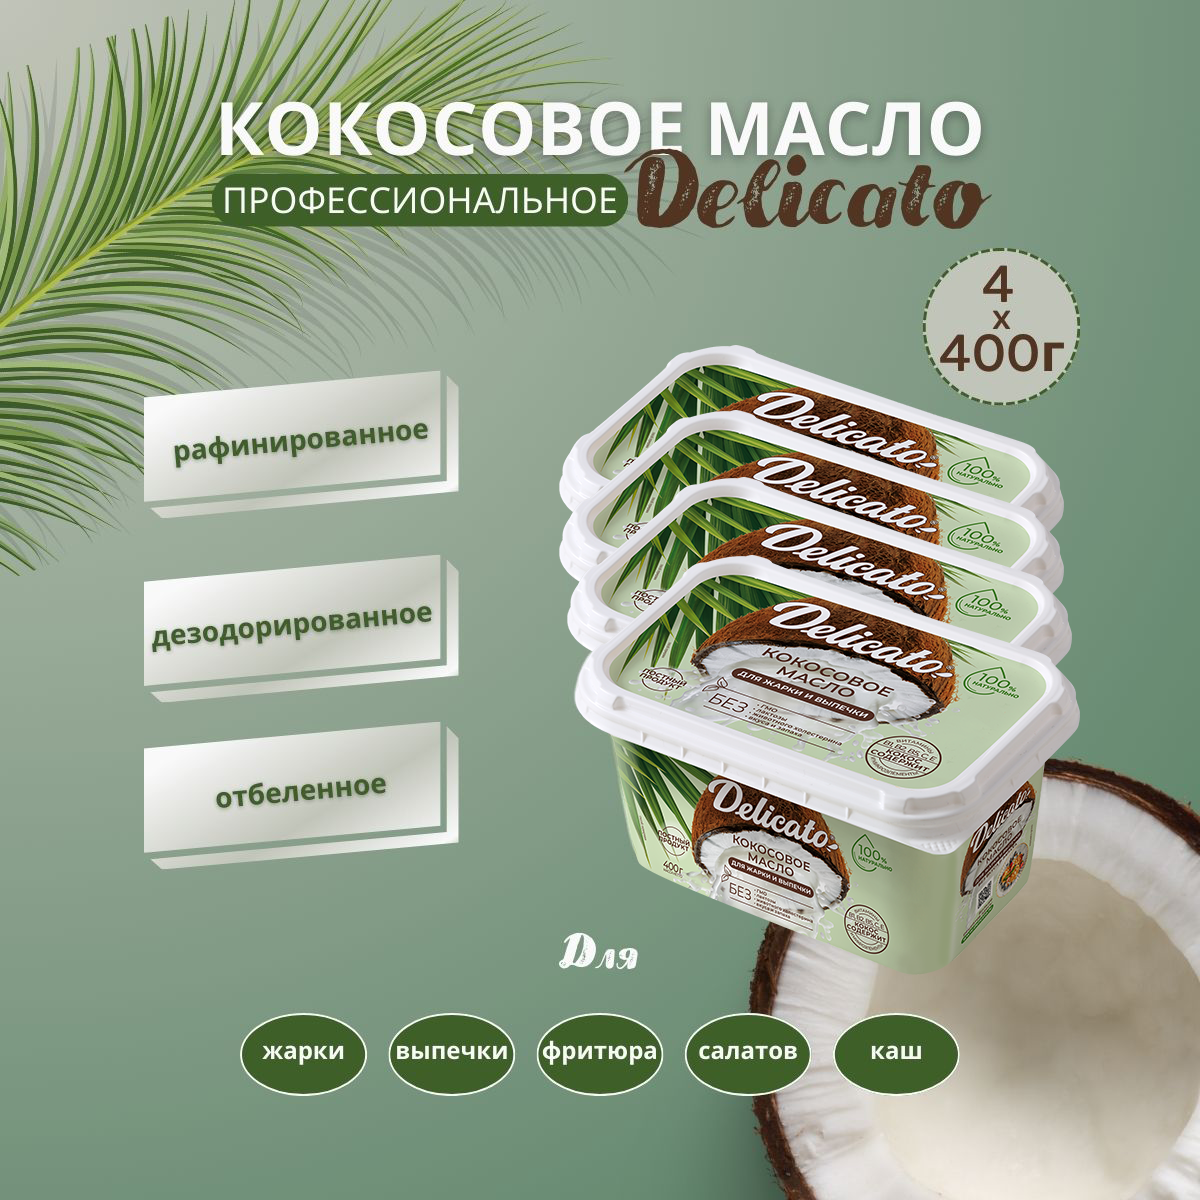 Кокосовое масло Delicato 1600 г ( 4х400 г) пищевое для жарки, выпечки и фритюра.